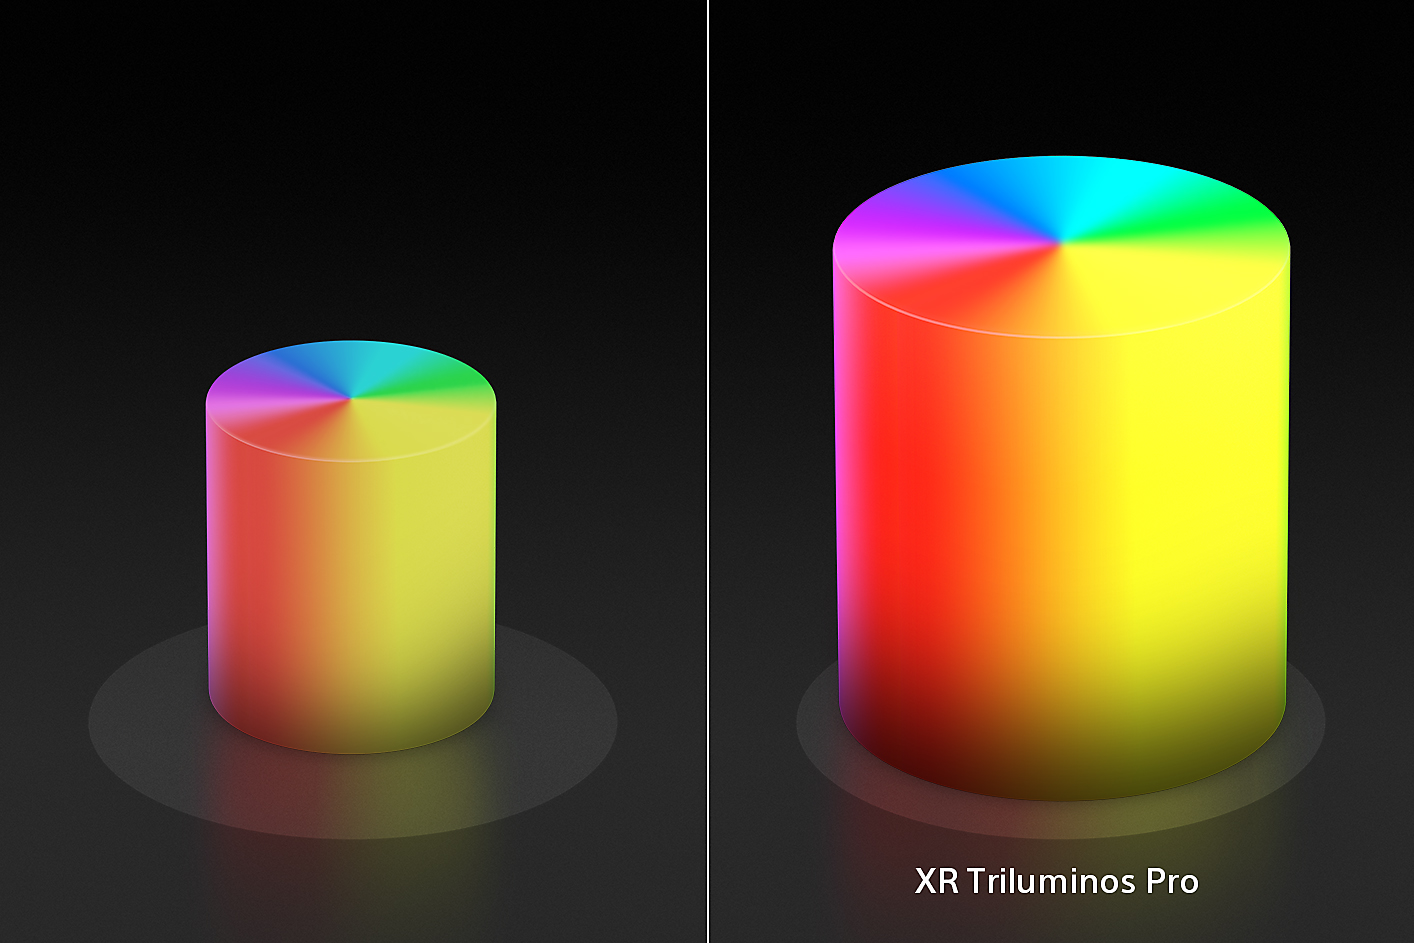 Màn hình chia đôi hiển thị hai nón màu hình nến, hình nhỏ hơn ở bên trái và hình lớn hơn ở bên phải, với màu sắc và họa tiết được nâng cao nhờ XR Triluminos Pro